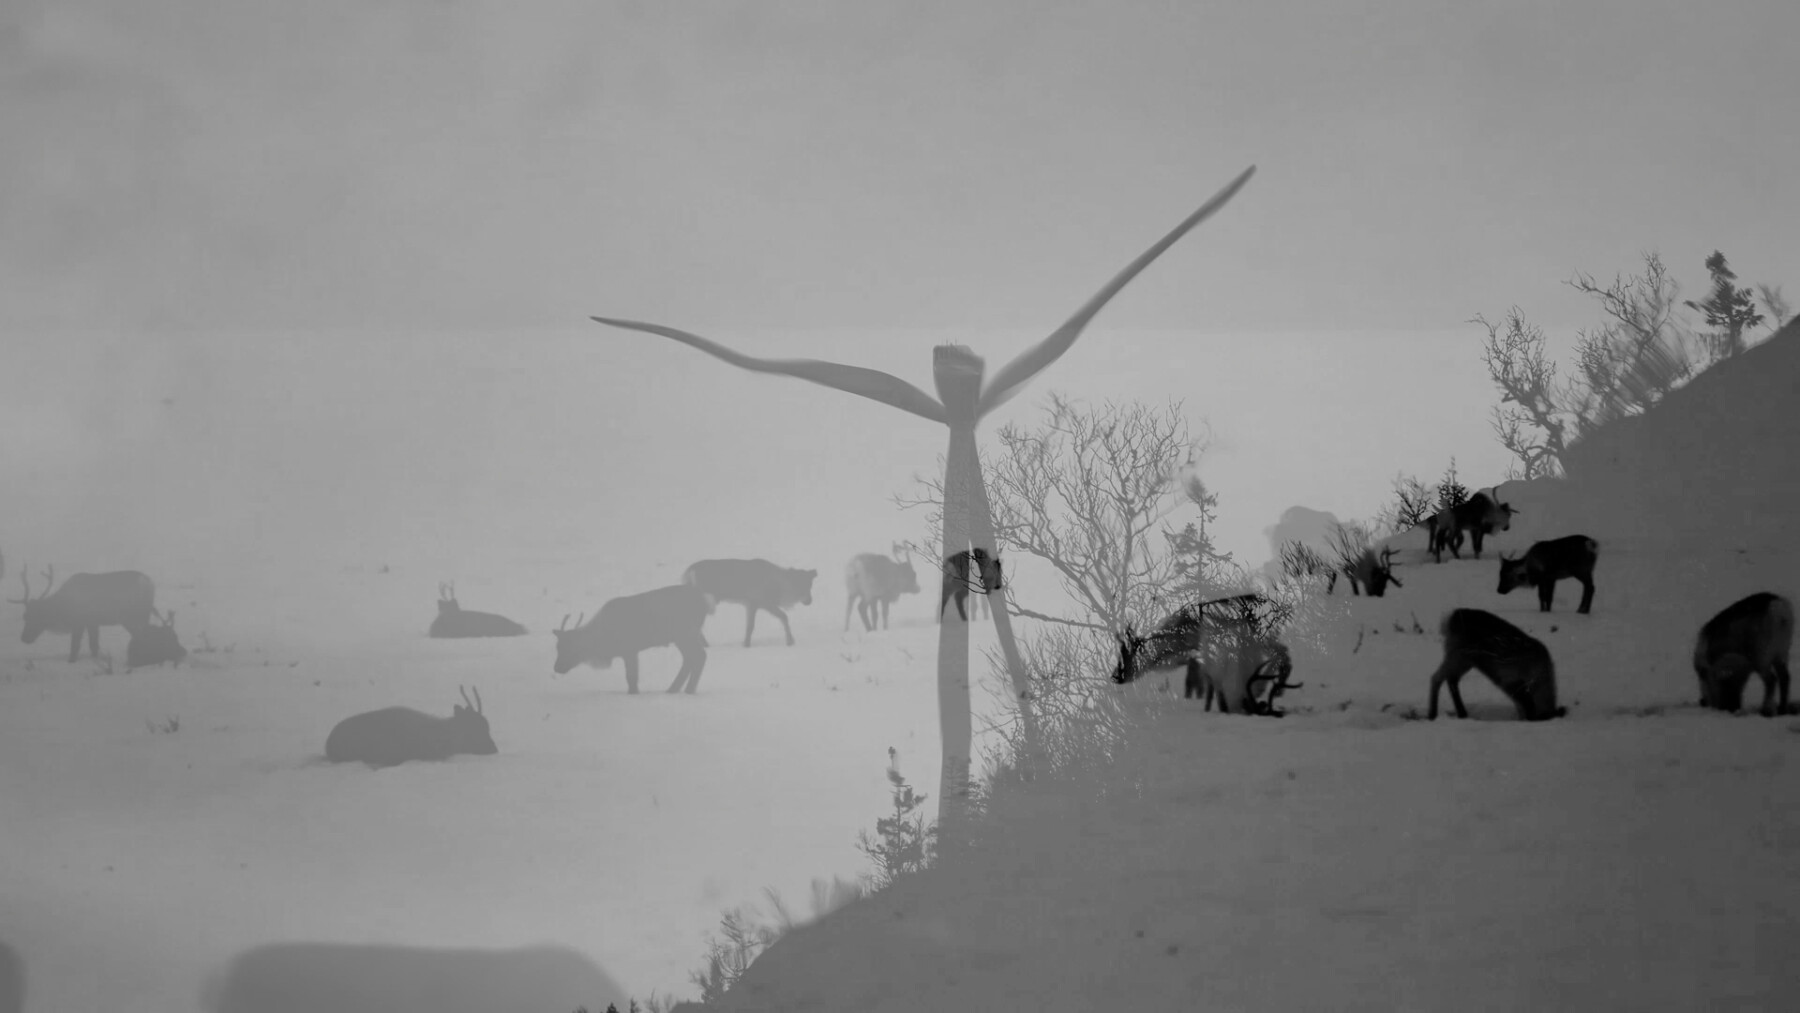 Dos imágenes superpuestas en blanco y negro: Una muestra unos renos pastando y la otra una turbina eólica.